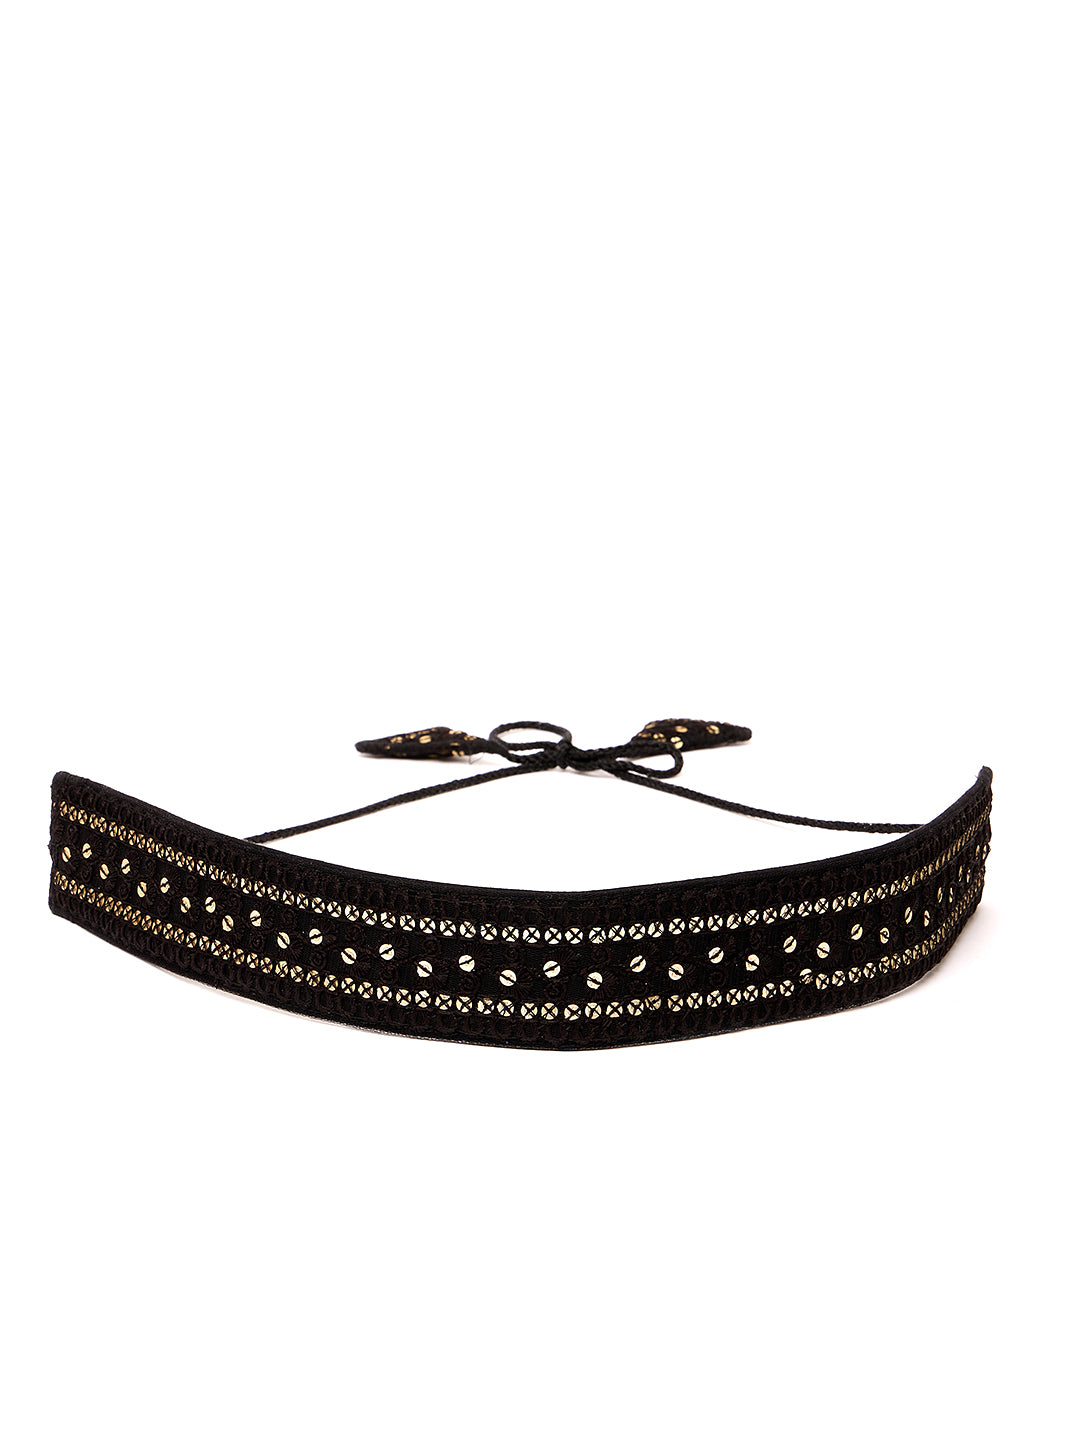 Athena Black Embroidered Belt - Athena Lifestyle